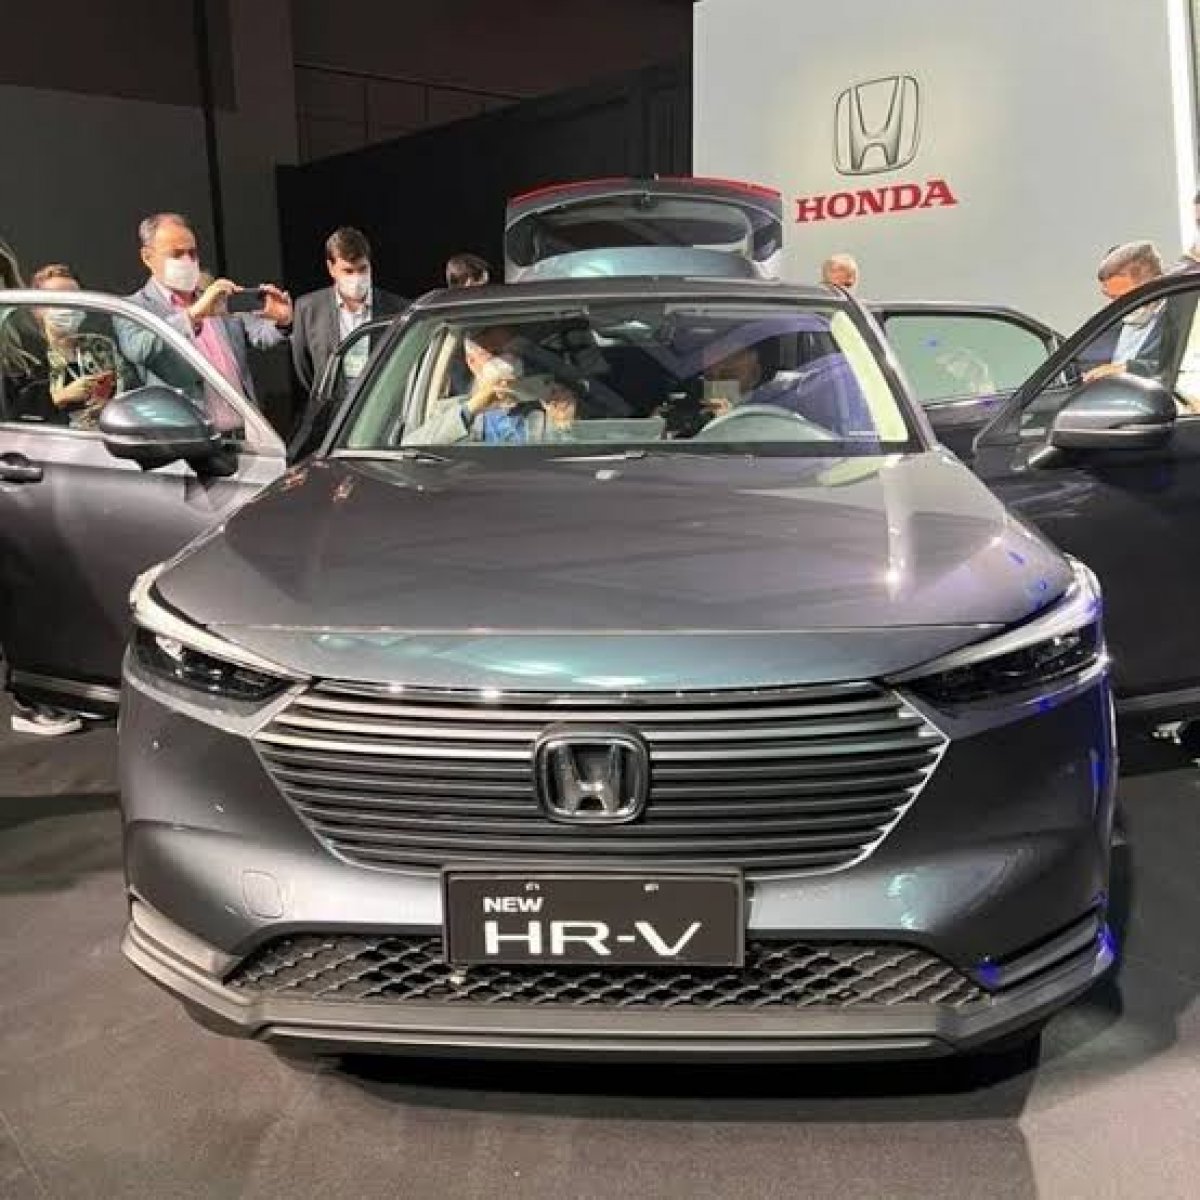 [Honda mostra novo HR-V a concessionários e imagens vazam na internet ]